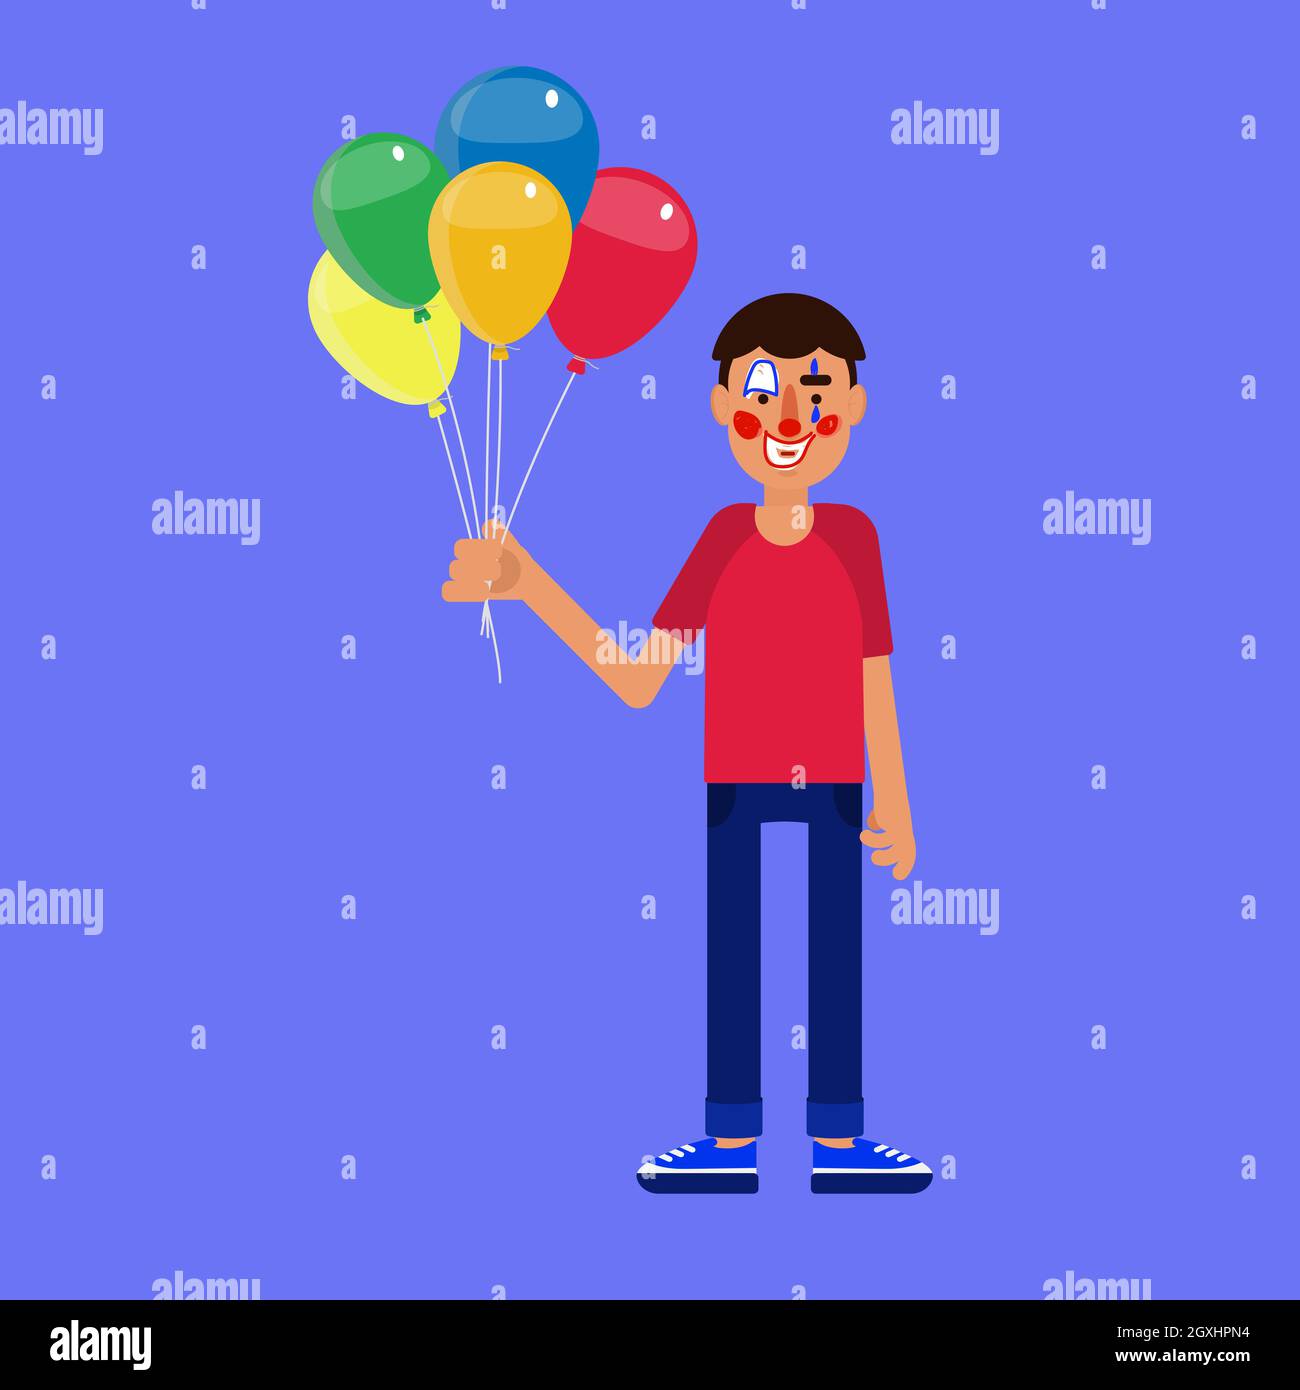 Mann mit bemaltem Clownsgesicht, der mehrere Heliumballons hält. Ernsthaftes Gesicht. Widersprüchliches Gesicht mit dem Rahmen der Feier. Stock Vektor